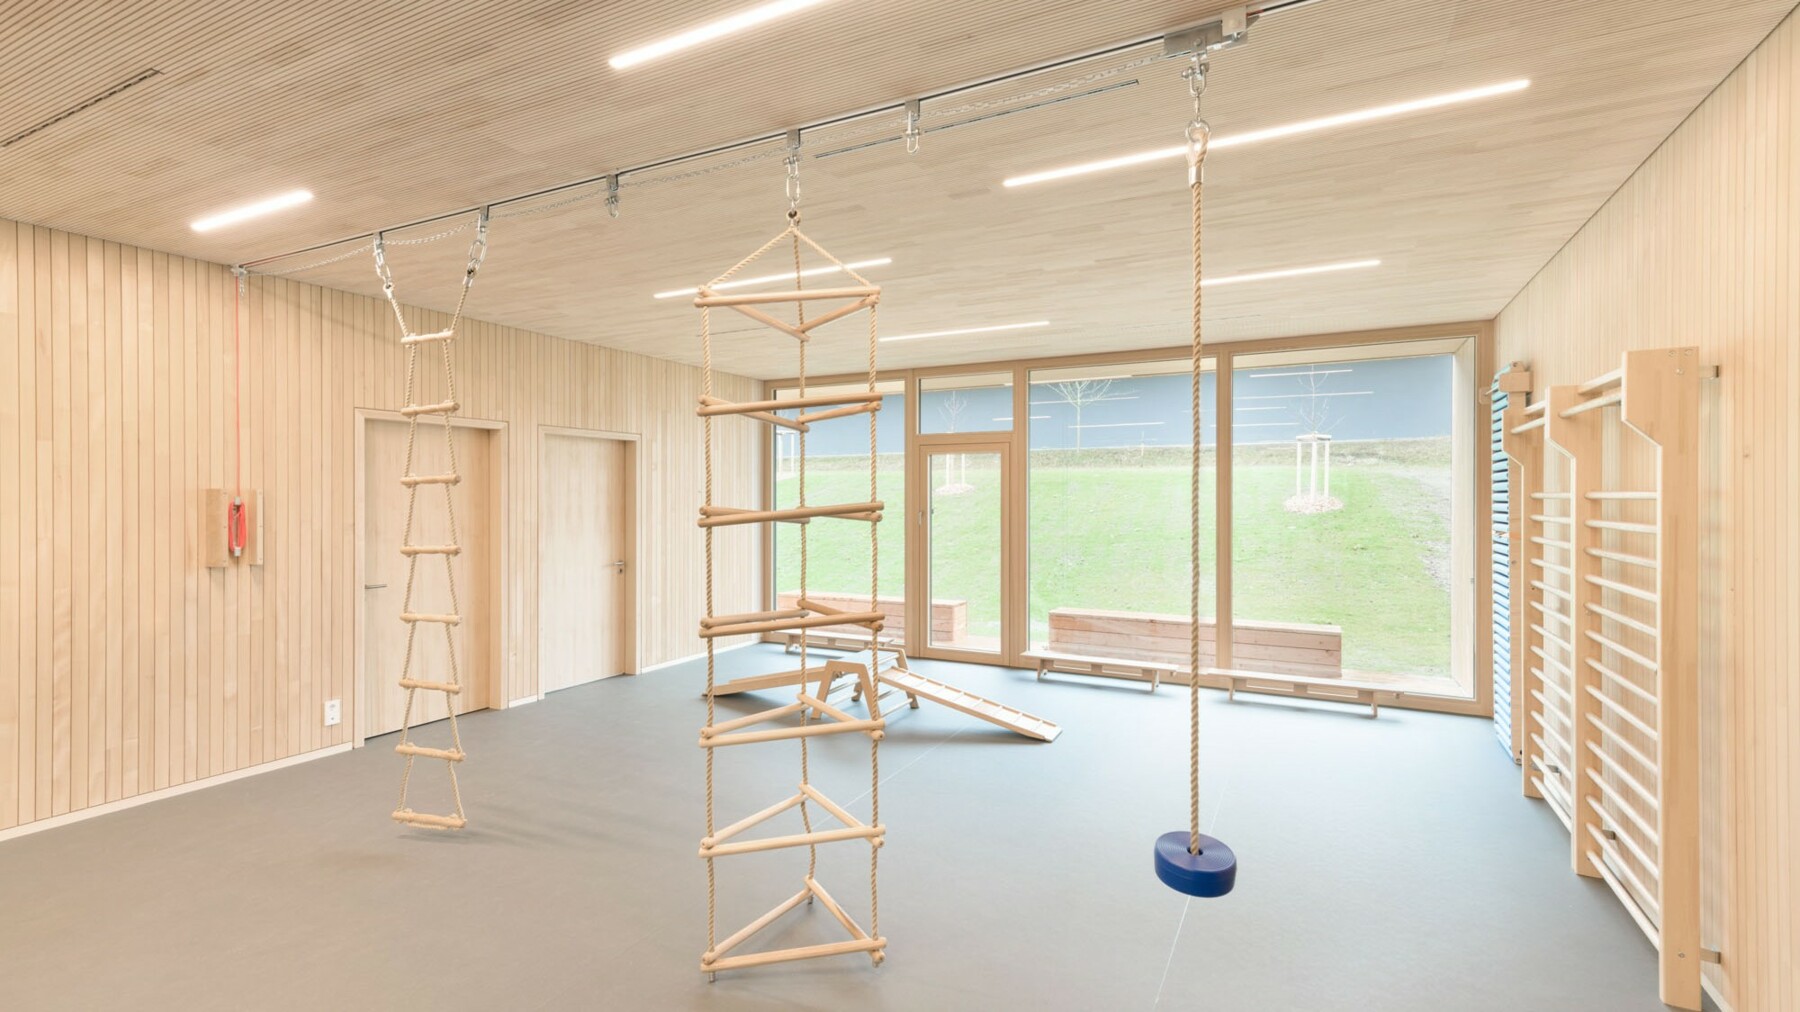 Decke in Turnhalle der Kinderkrippe Wiggensbach wird mit neuer Akustikverkleidung aus Holz ausgestattet